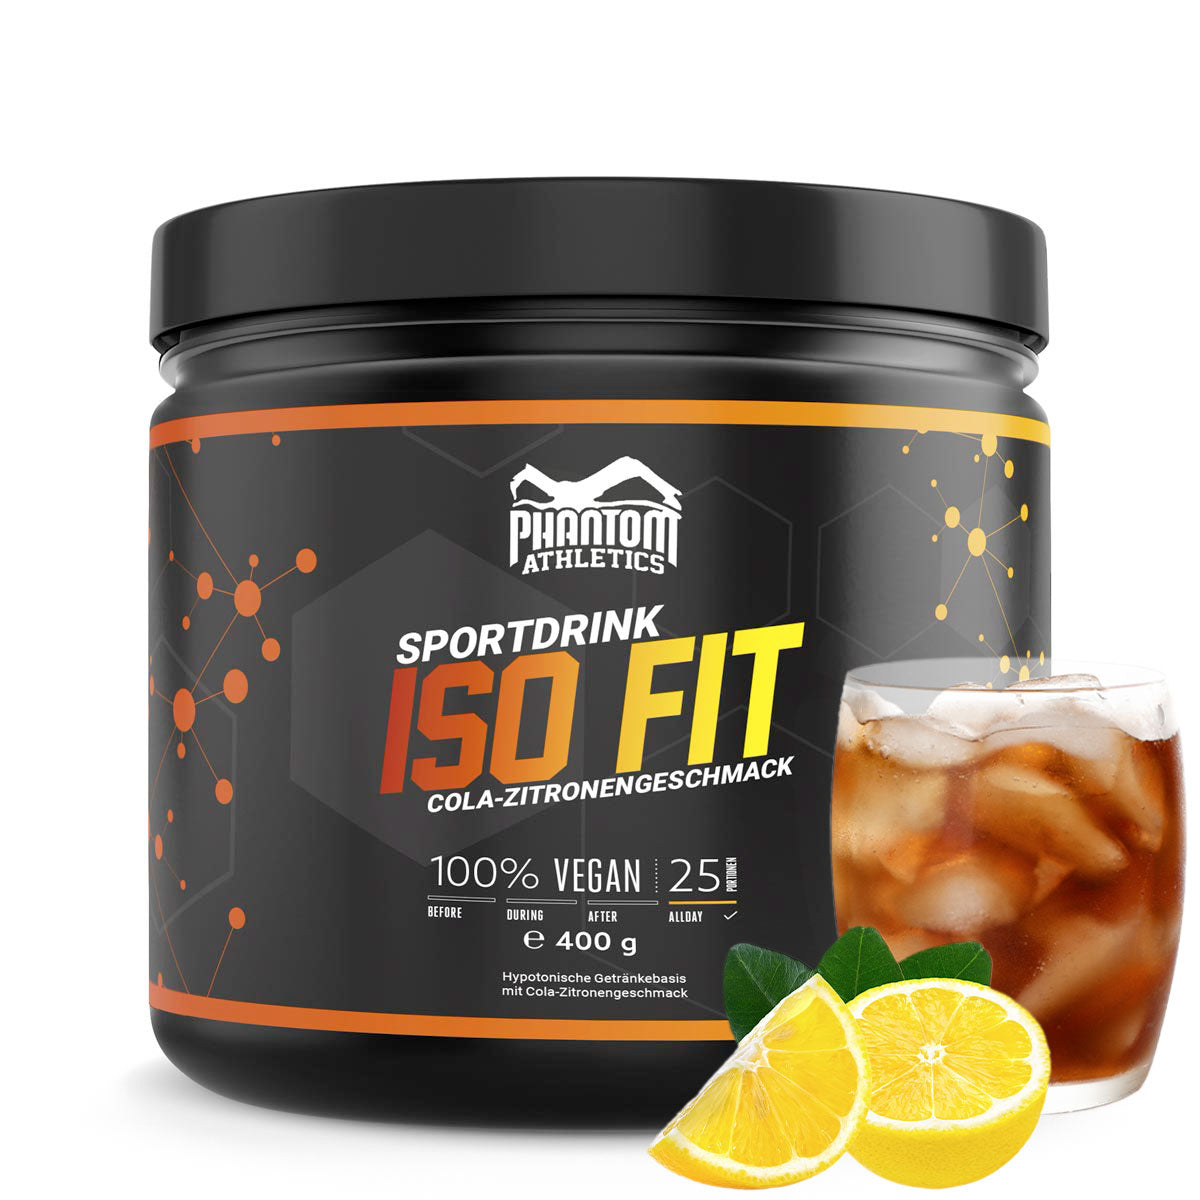 Le complément nutritionnel Phantom ISO FIT vous apporte tout ce dont vous avez besoin pour l'entraînement aux arts martiaux. Maintenant avec une délicieuse saveur de cola-citron.